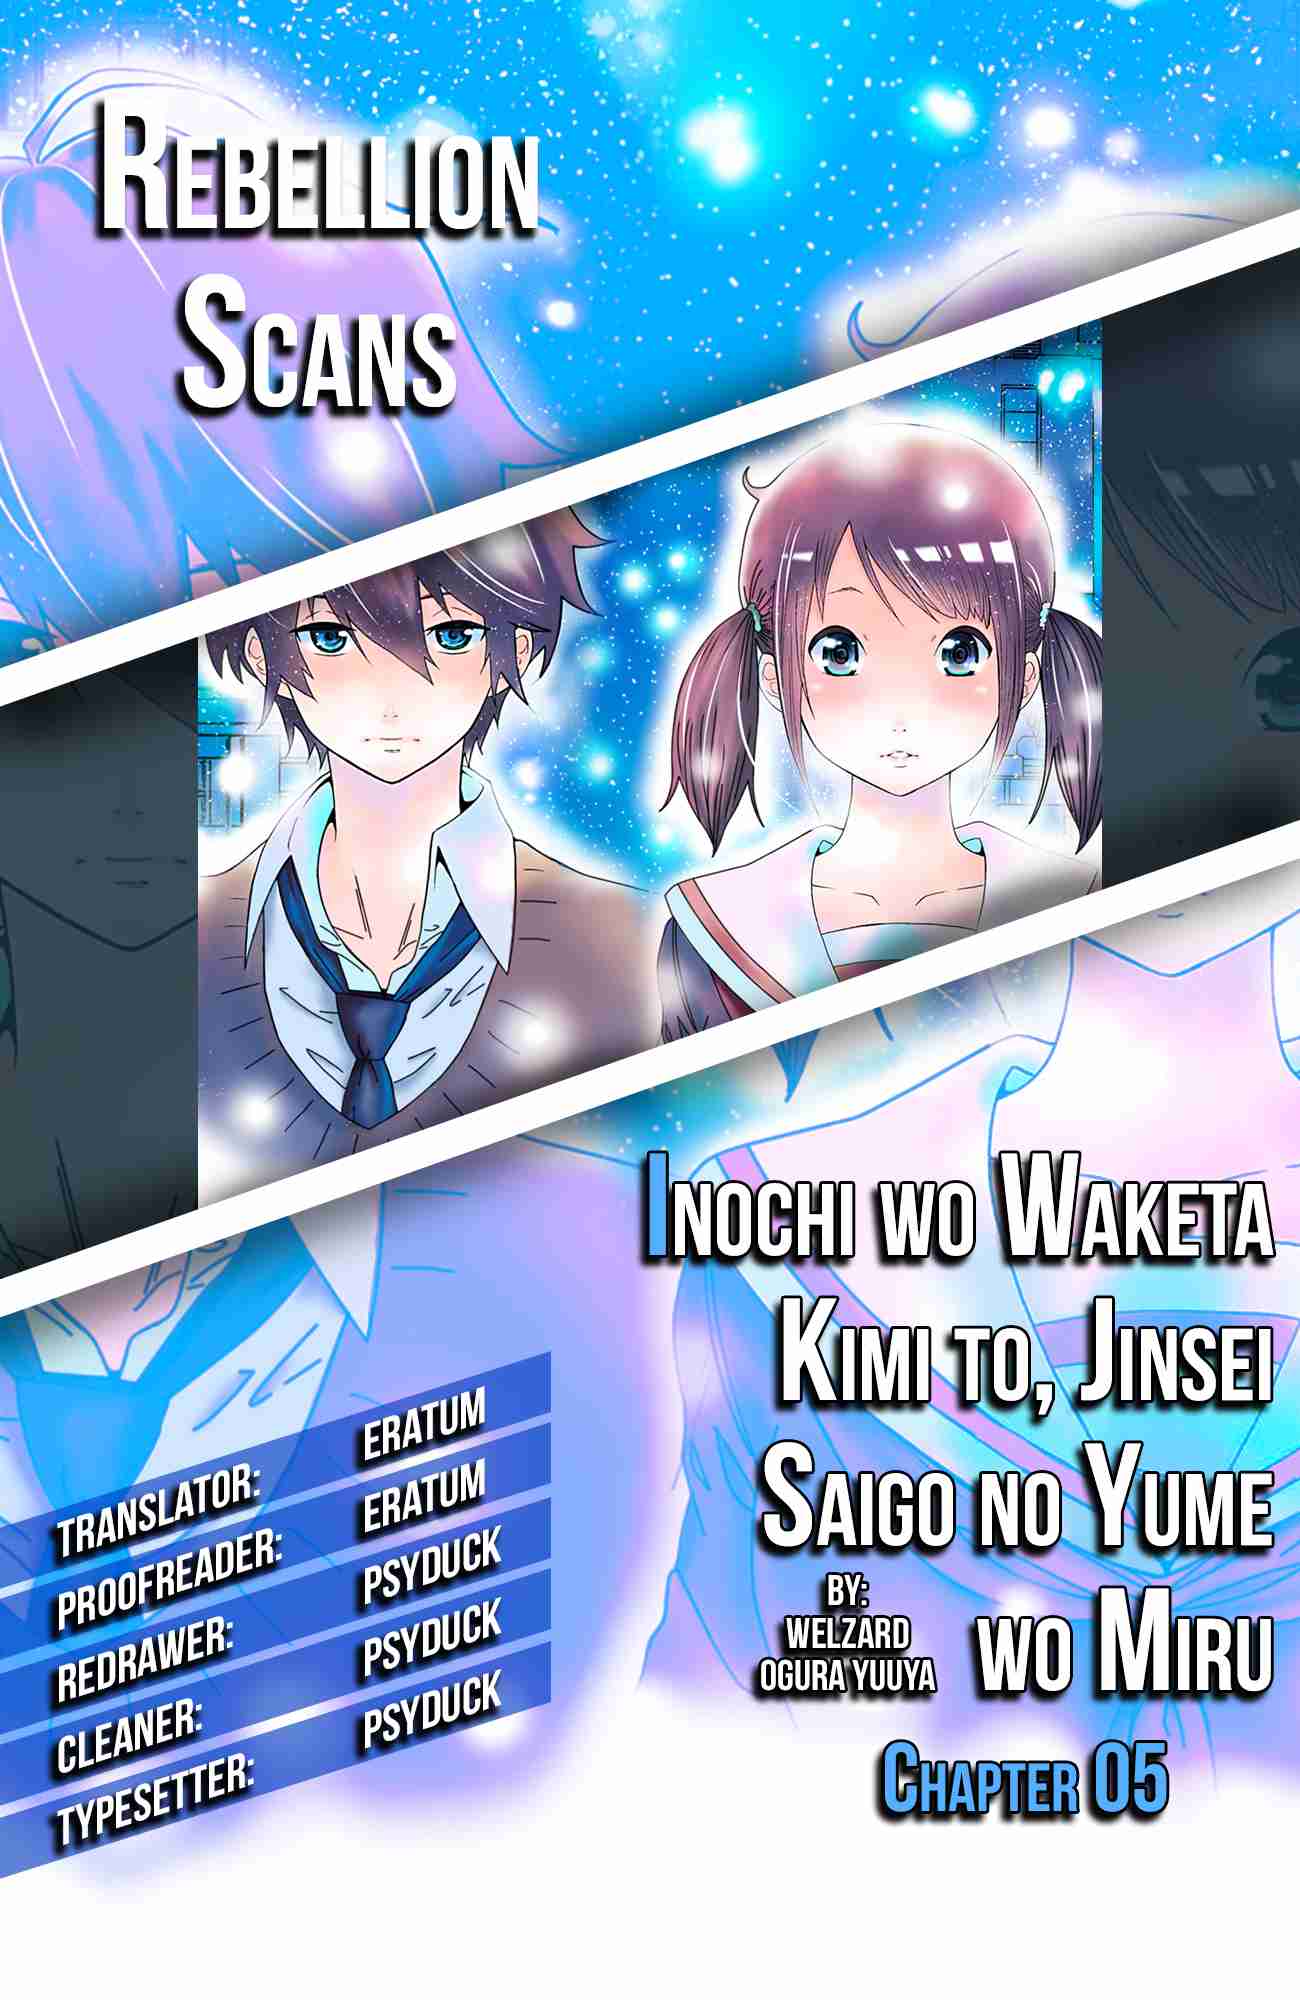 Inochi wo Waketa Kimi to, Jinsei Saigo no Yume wo Miru Vol.1 Ch.5